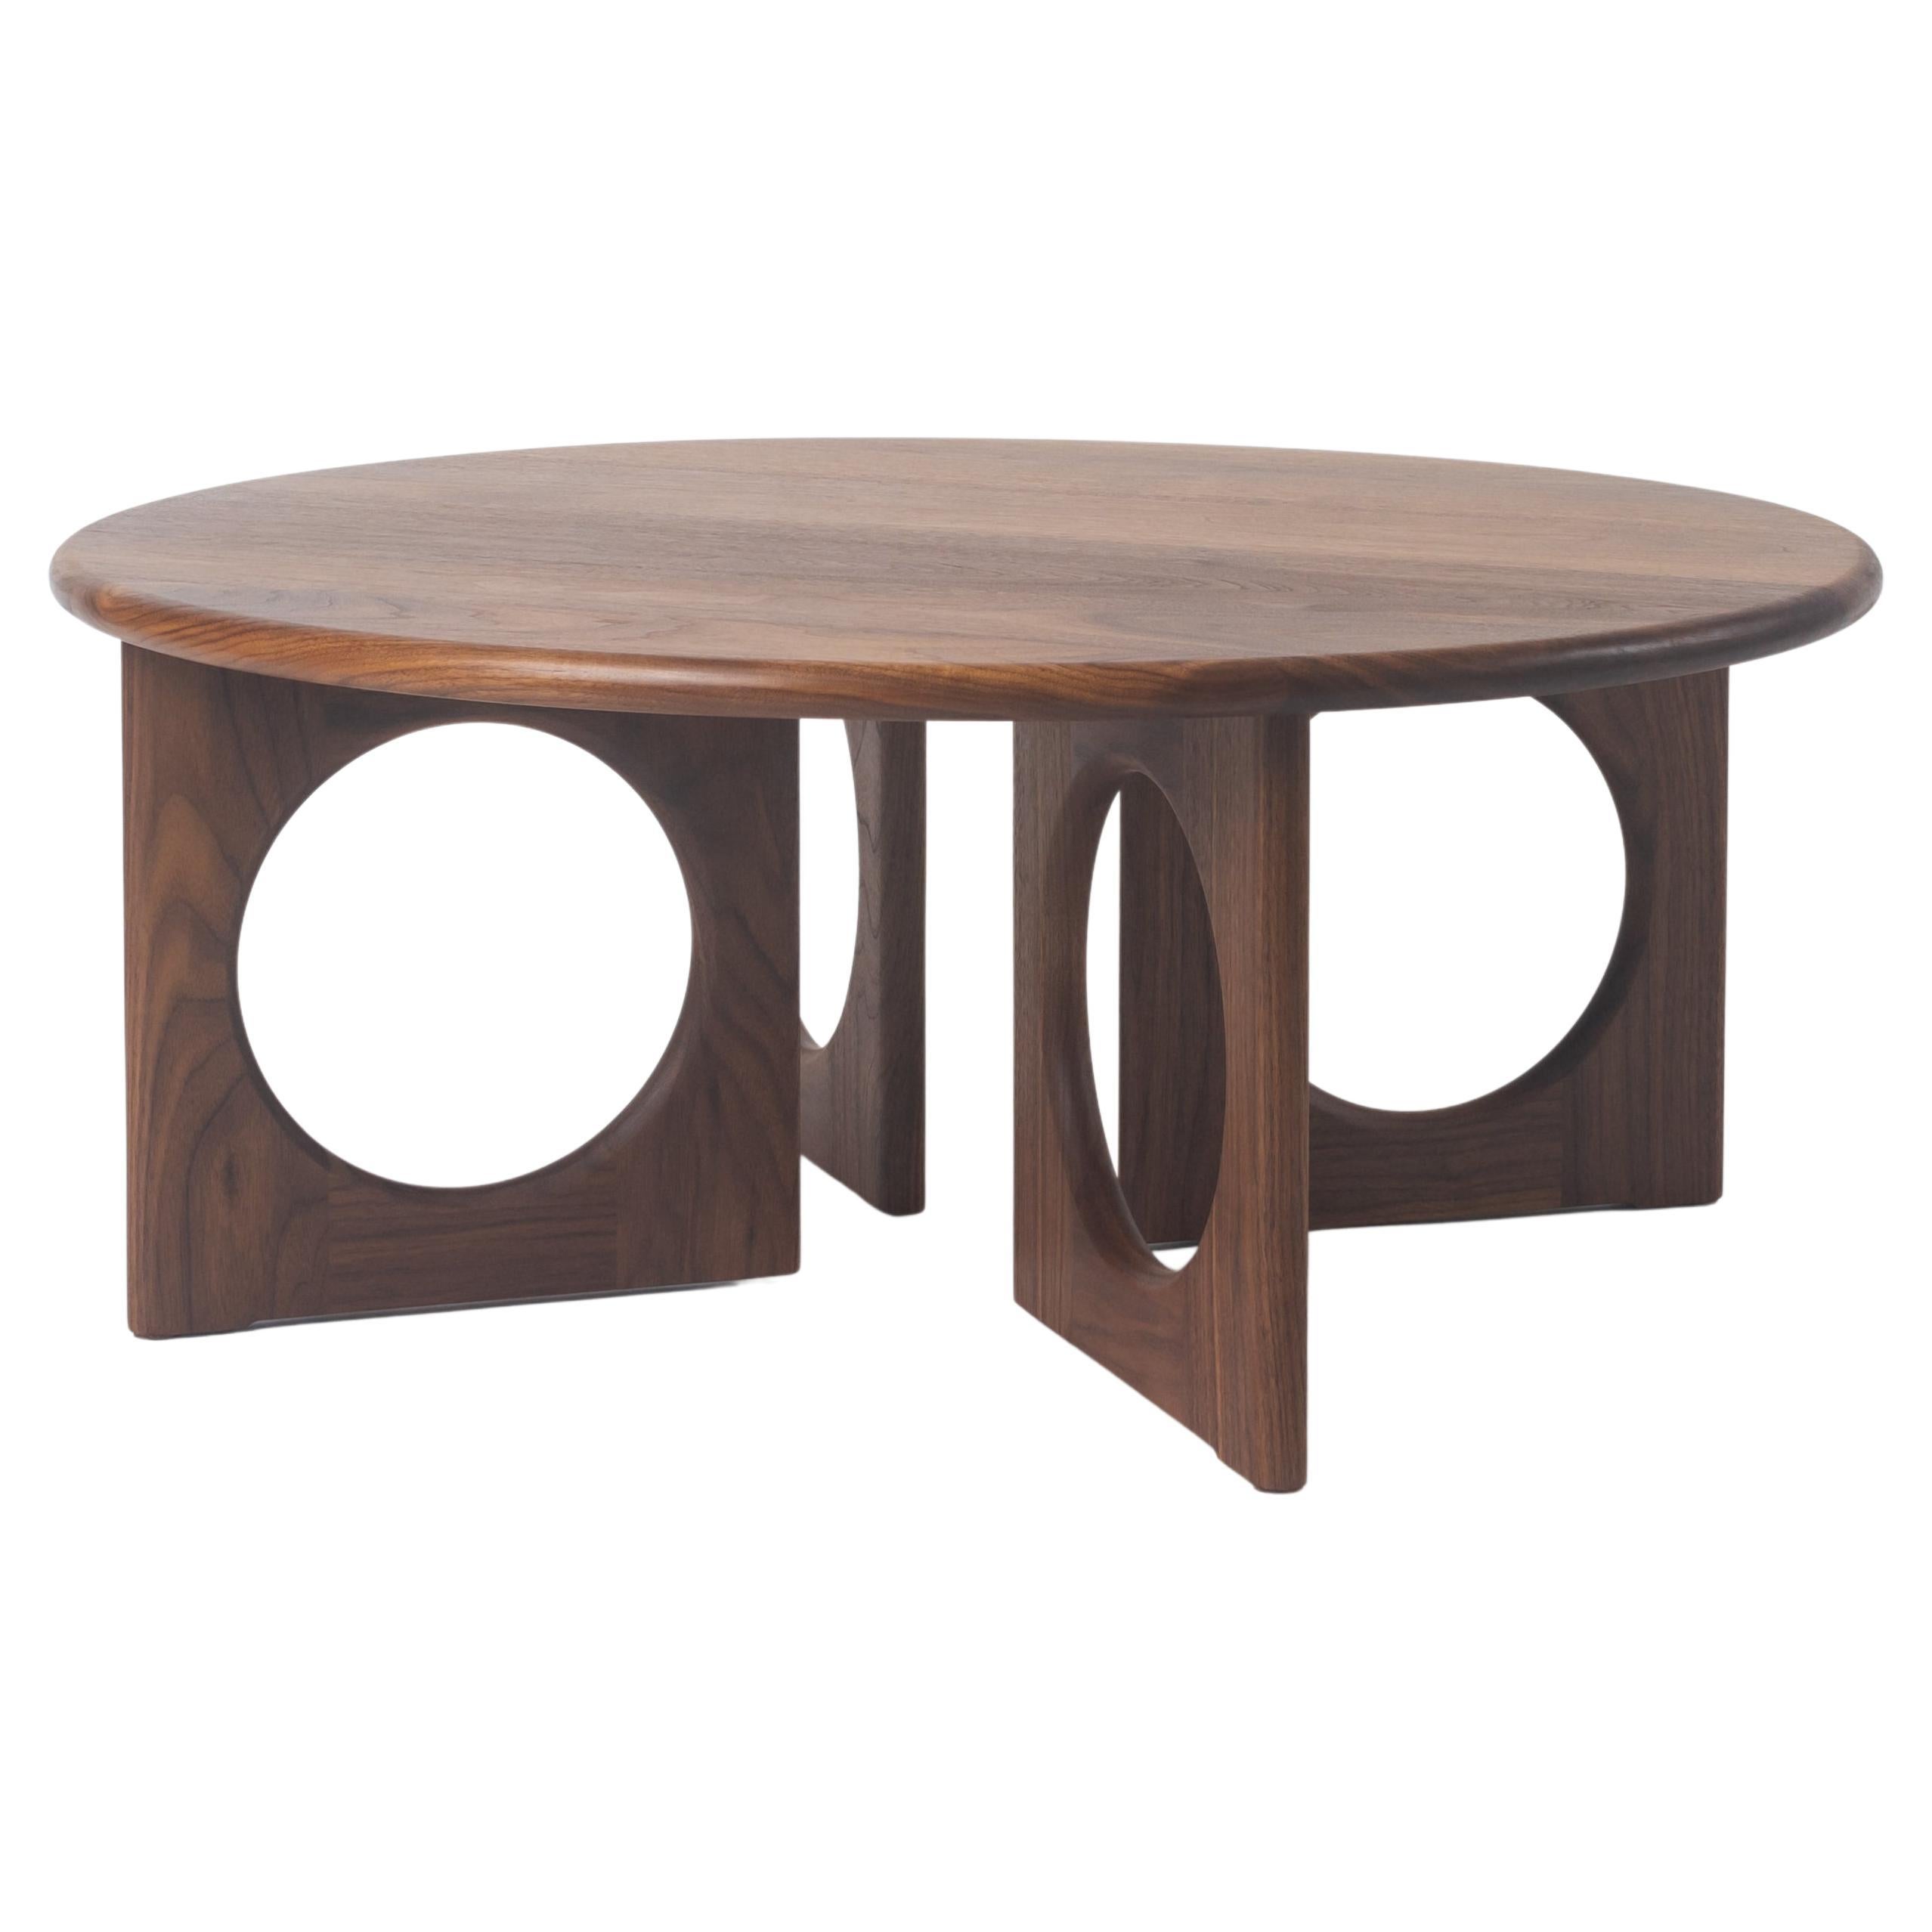 Table basse Porthole, table basse en bois massif fabriquée à la main